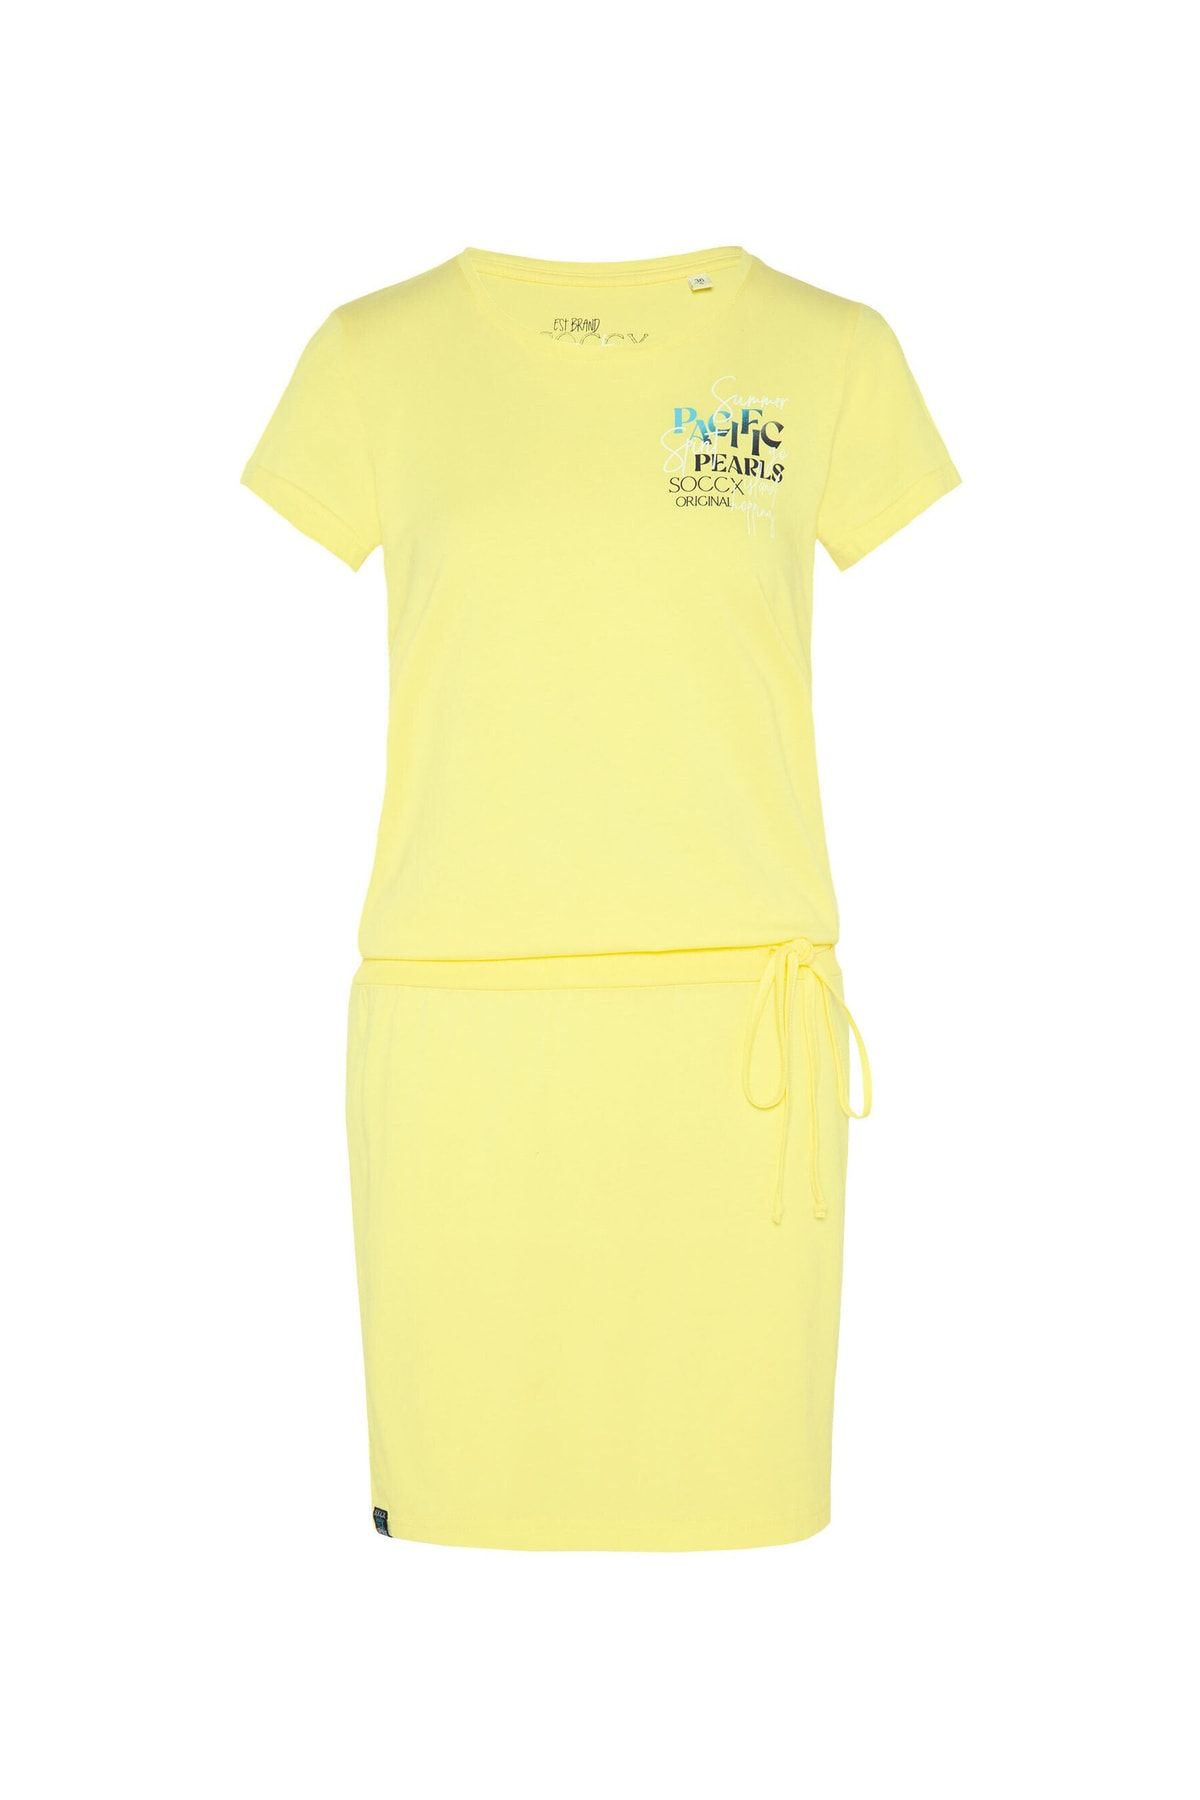 Soccx kleid T-Shirt-Kleid mit geripptem Taillenbund, Rundhalsausschnitt und  Label Print - Trendyol